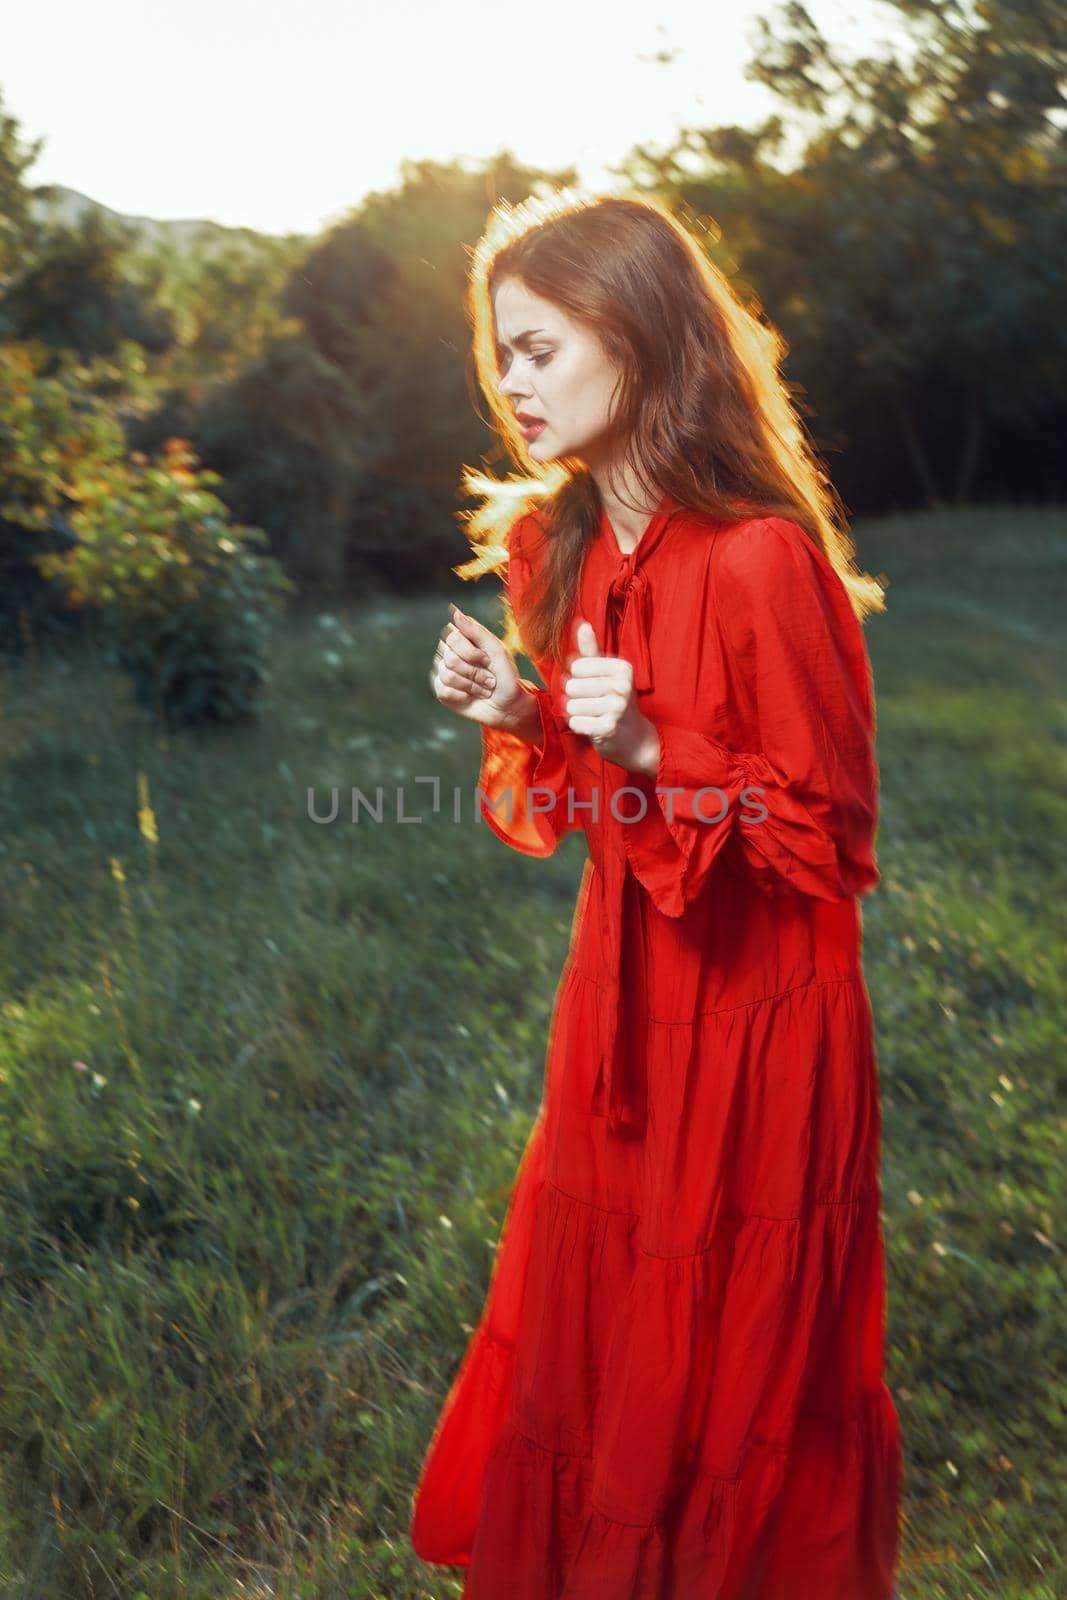 woman in red dress in field near tree posing summer by Vichizh